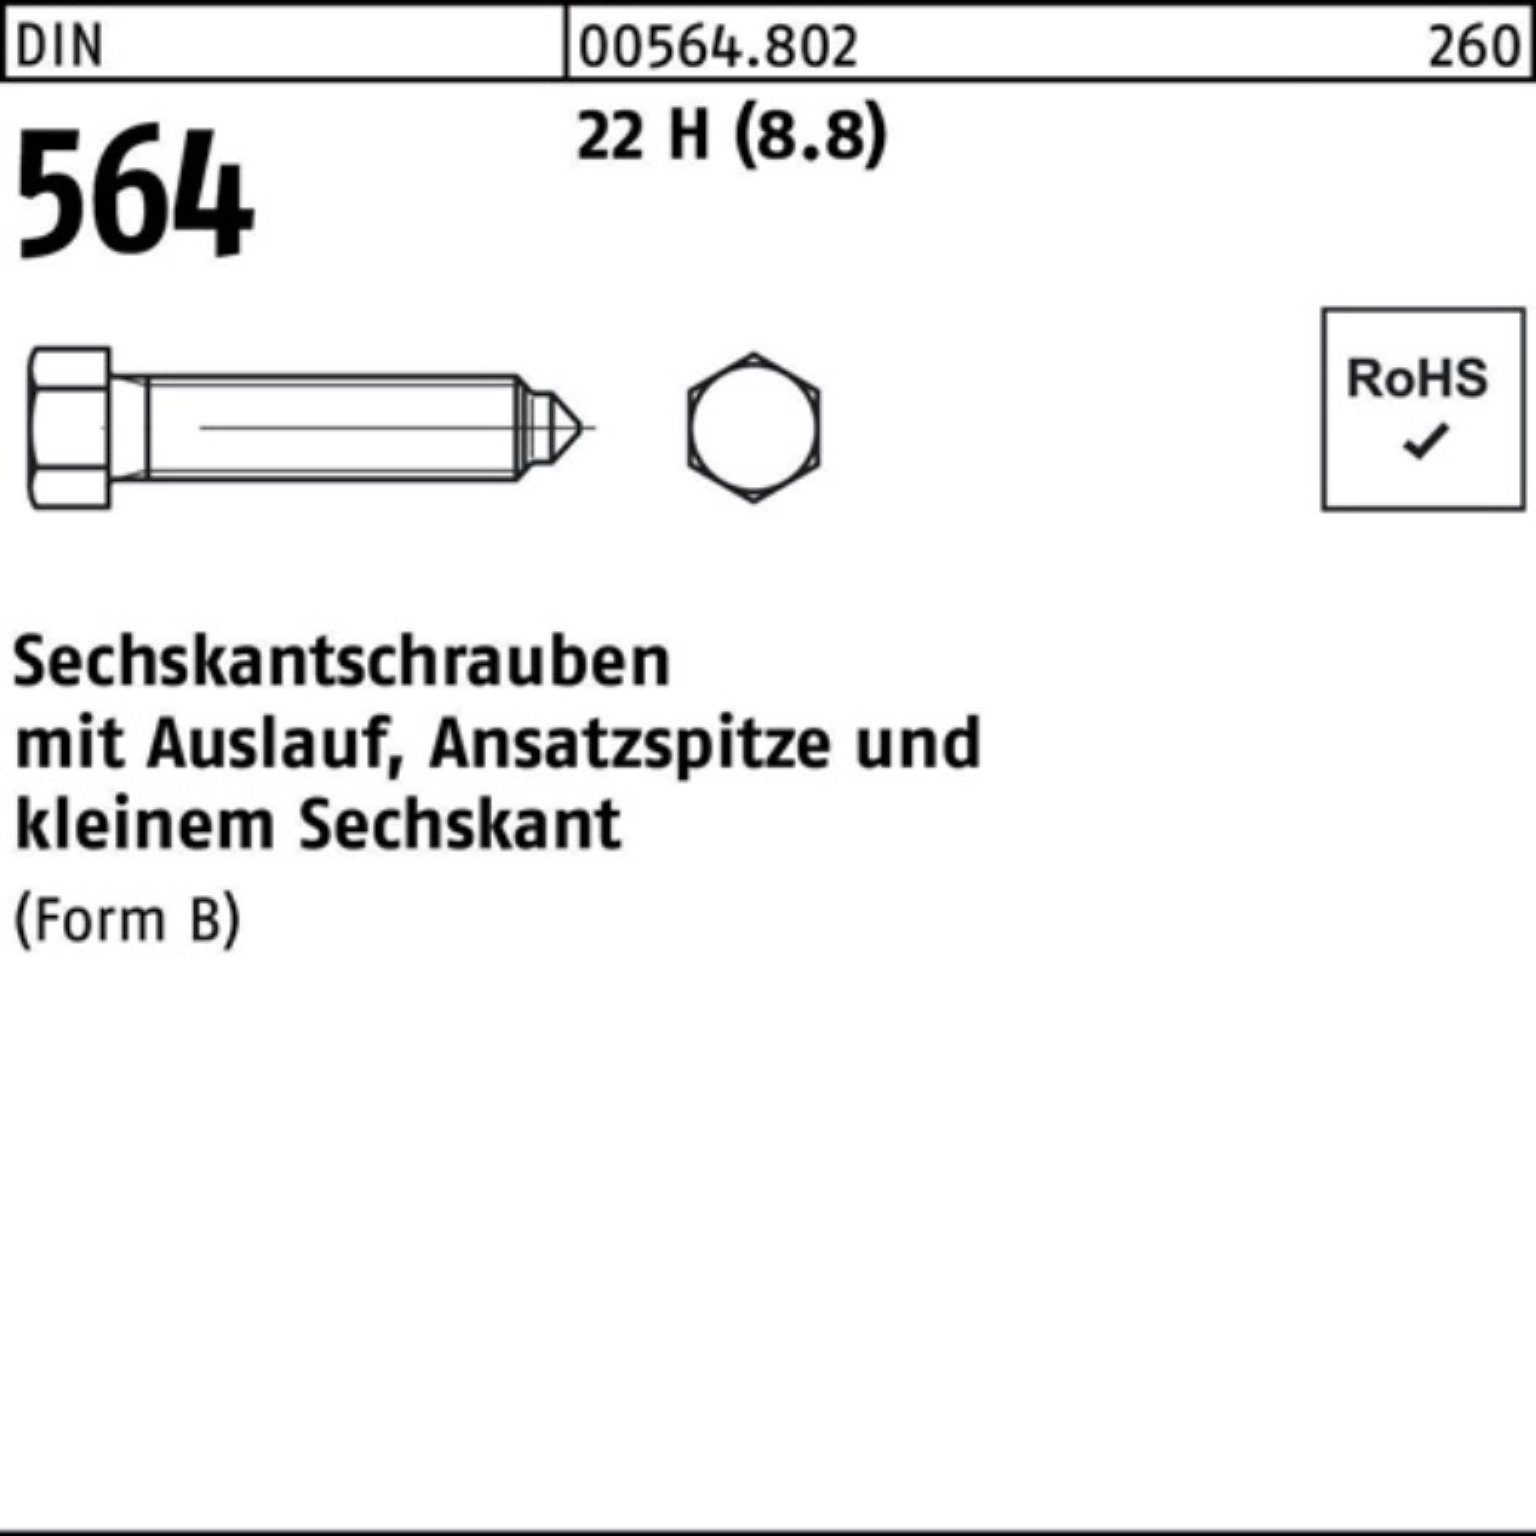 Reyher Sechskantschraube 100er Pack Sechskantschraube DIN 564 Ansatzspitze/Auslauf BM 6x 16 22